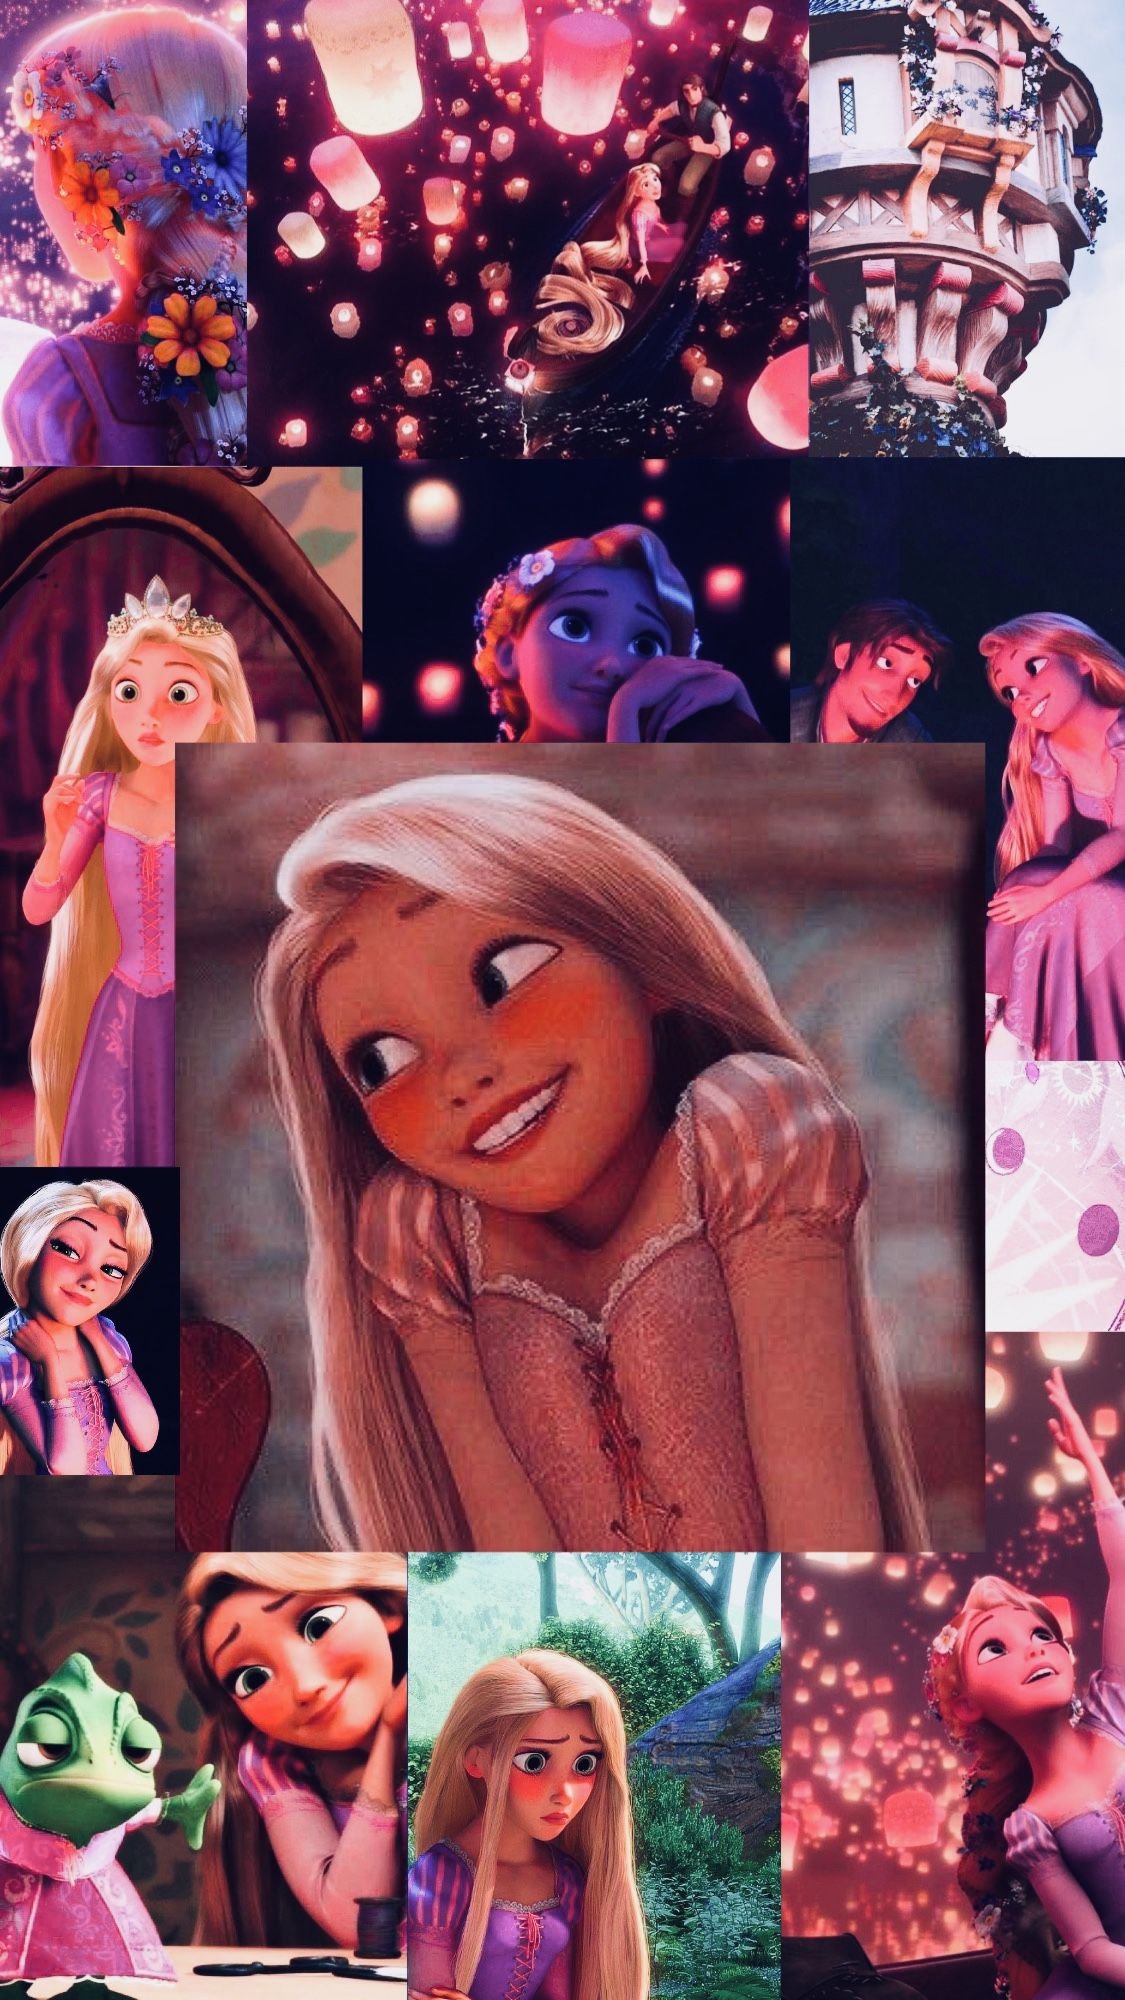 100+] Rapunzel Wallpapers | Wallpapers.com